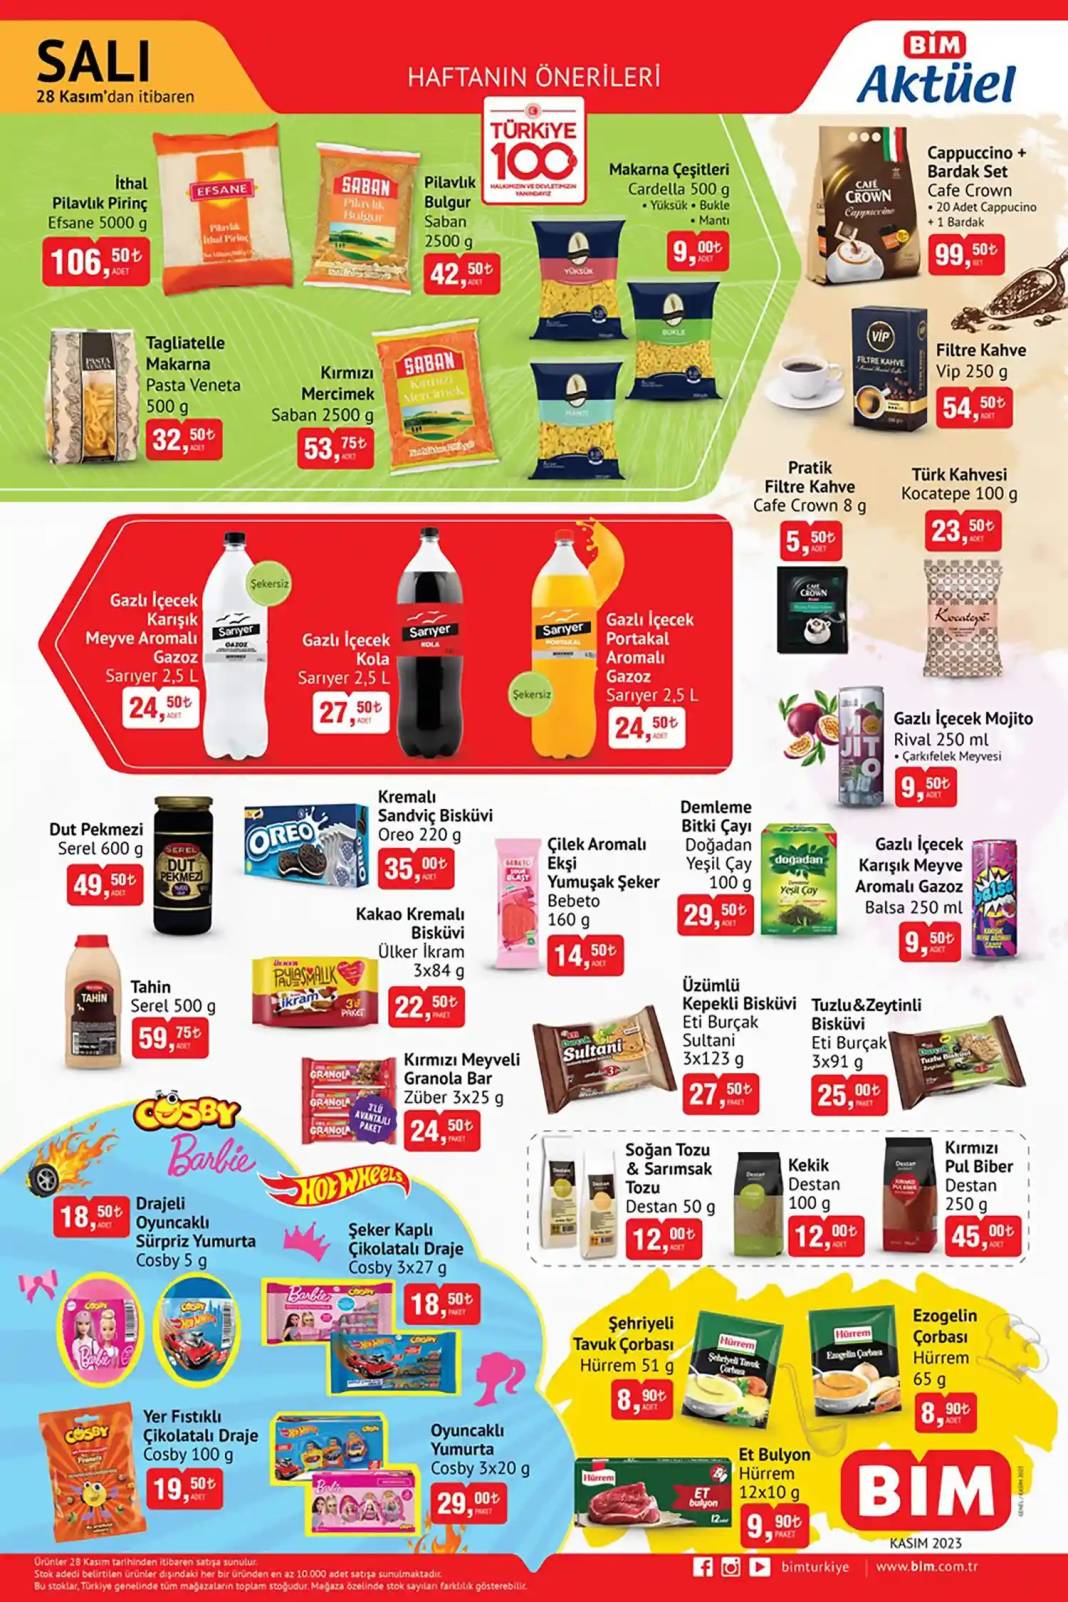 BİM'de Makarna sadece 9 TL'ye Satılıyor! Kekik, Pul Biber, Sarımsak Tozu ve Bitki Çayı Fiyatları düştü! 2